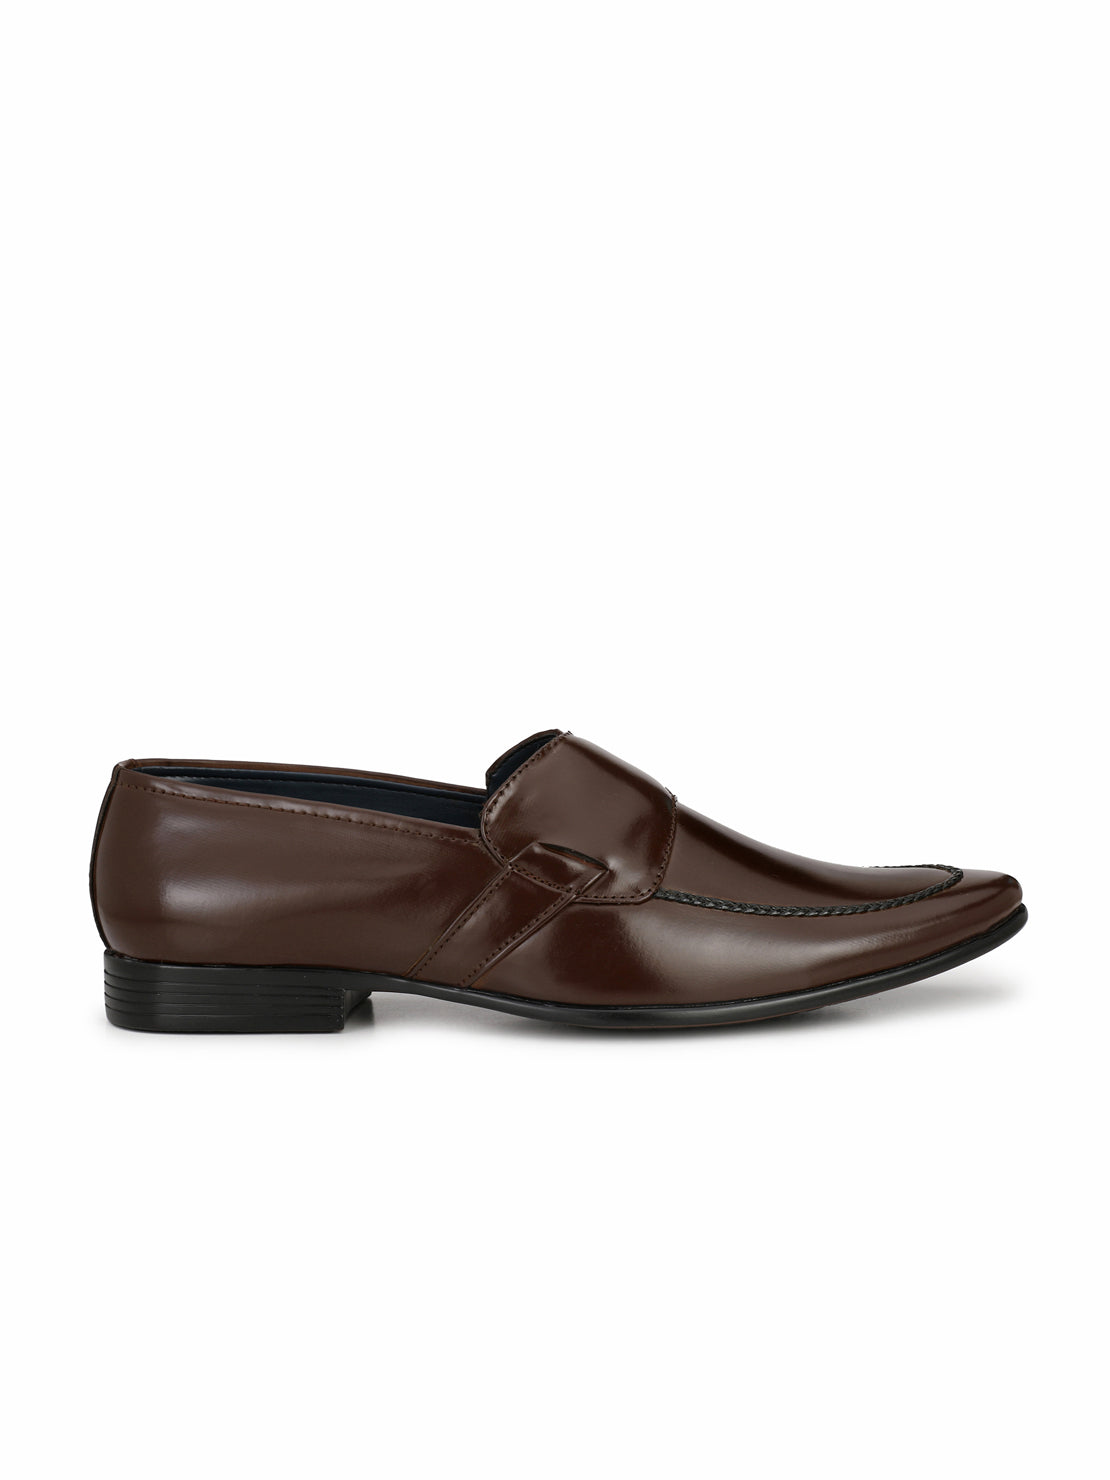 Guava Men's Brown Slip On Semi Formal Shoes (GV15JA575)